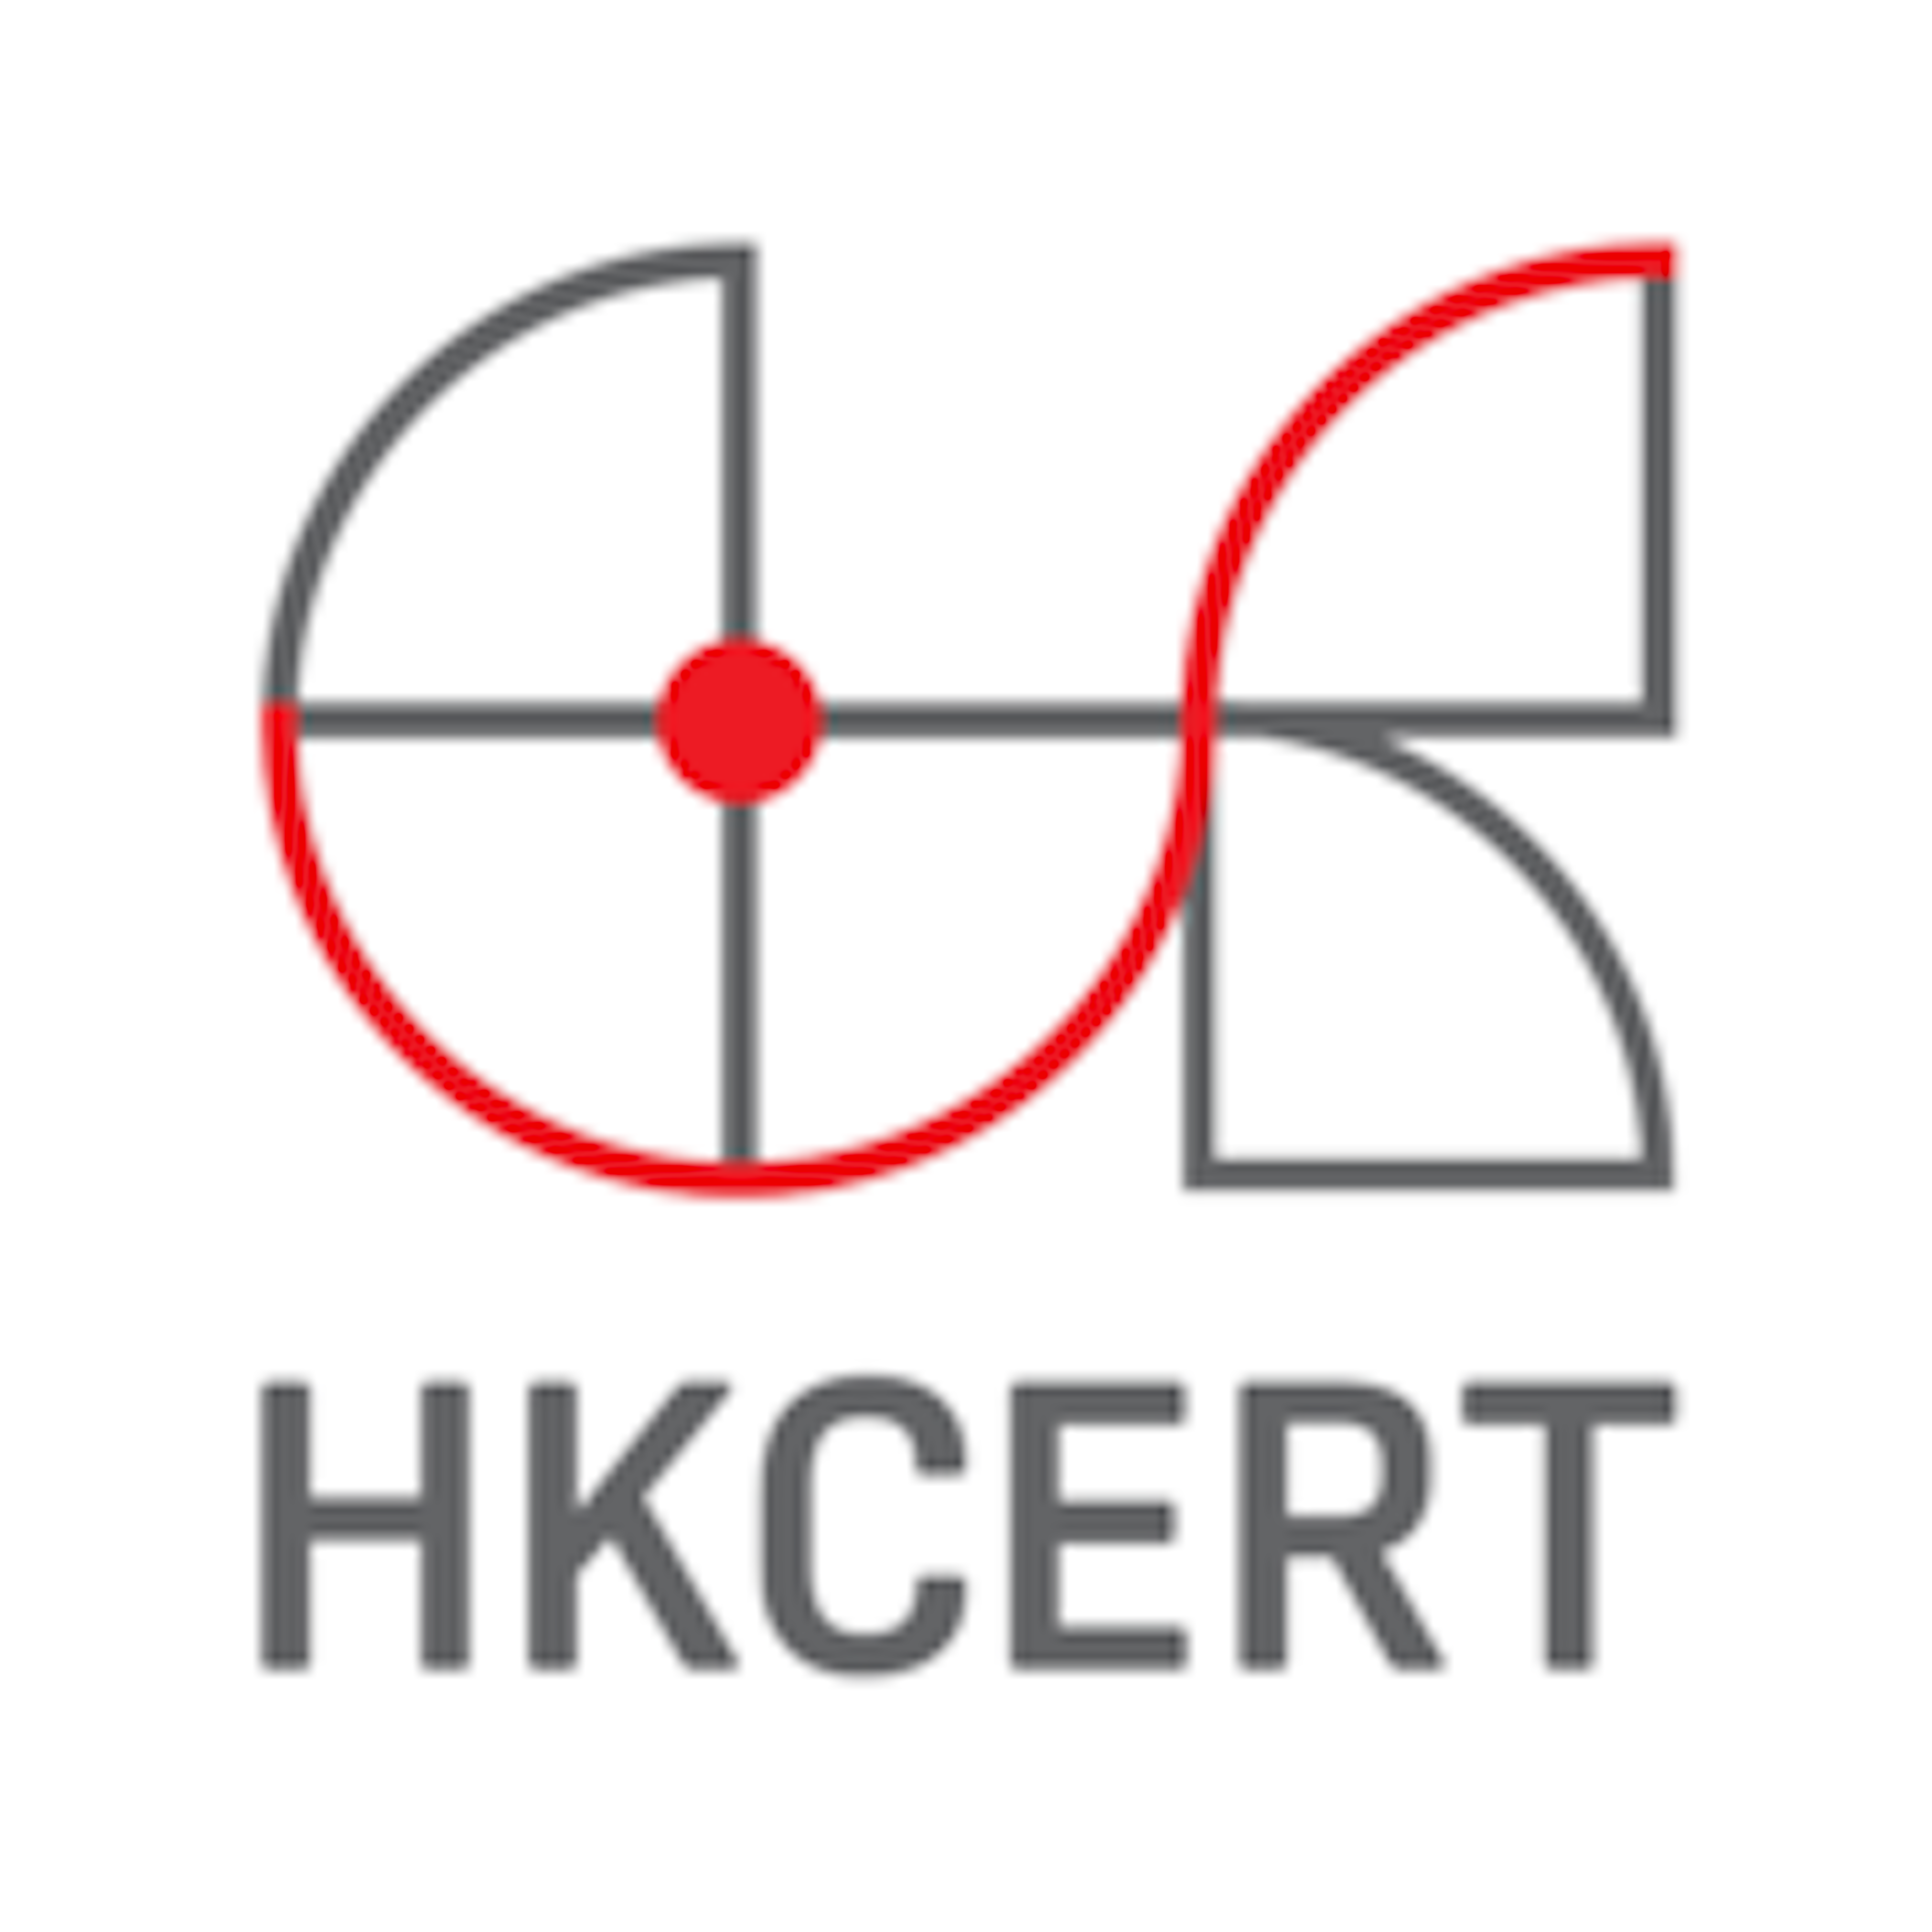 Hkcert.org